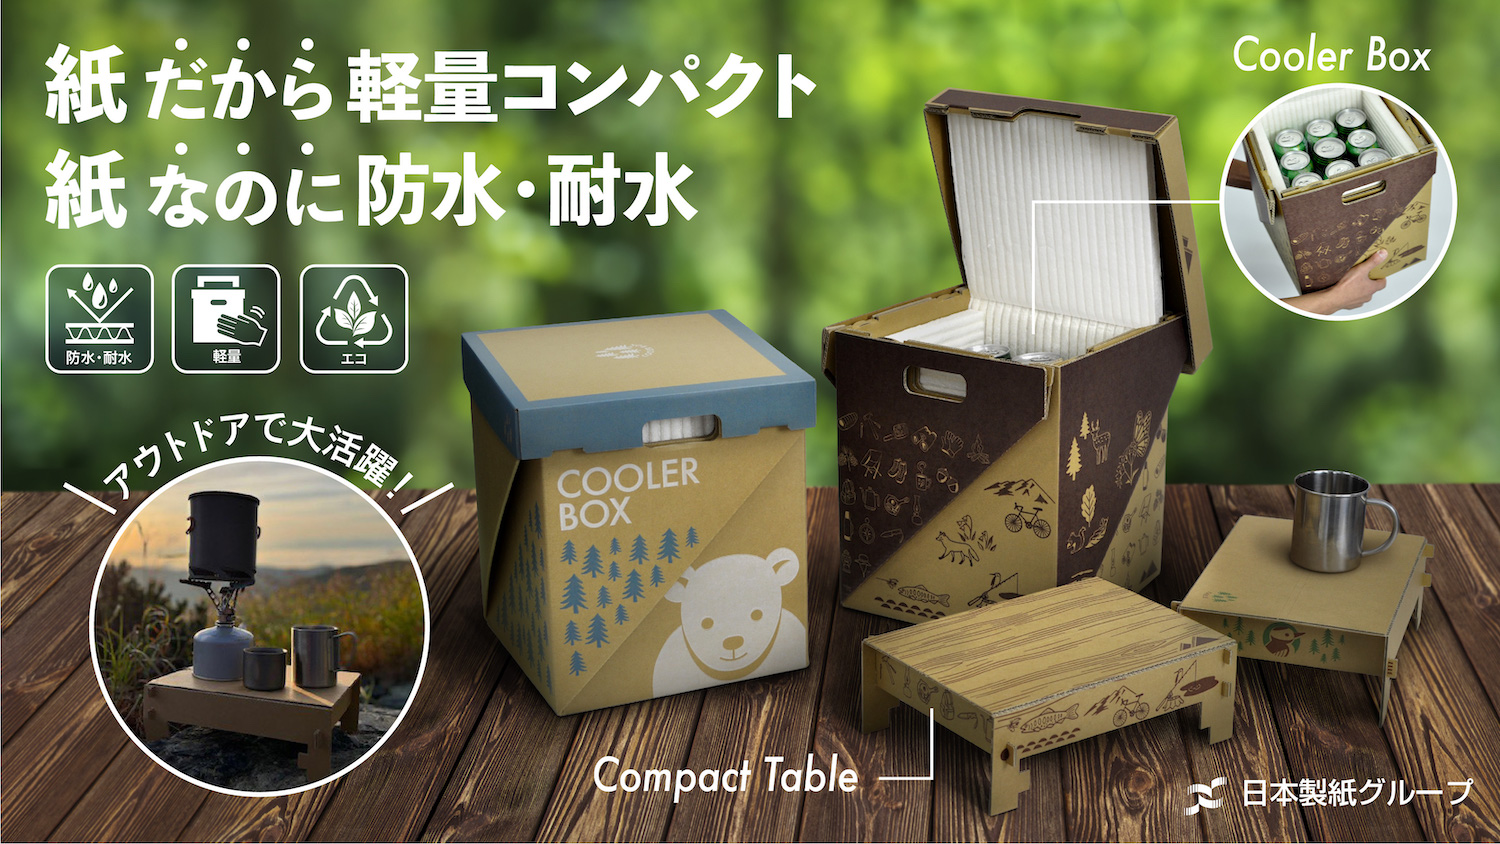 日本製紙グループ、“ほぼ紙”のクーラーボックス発売